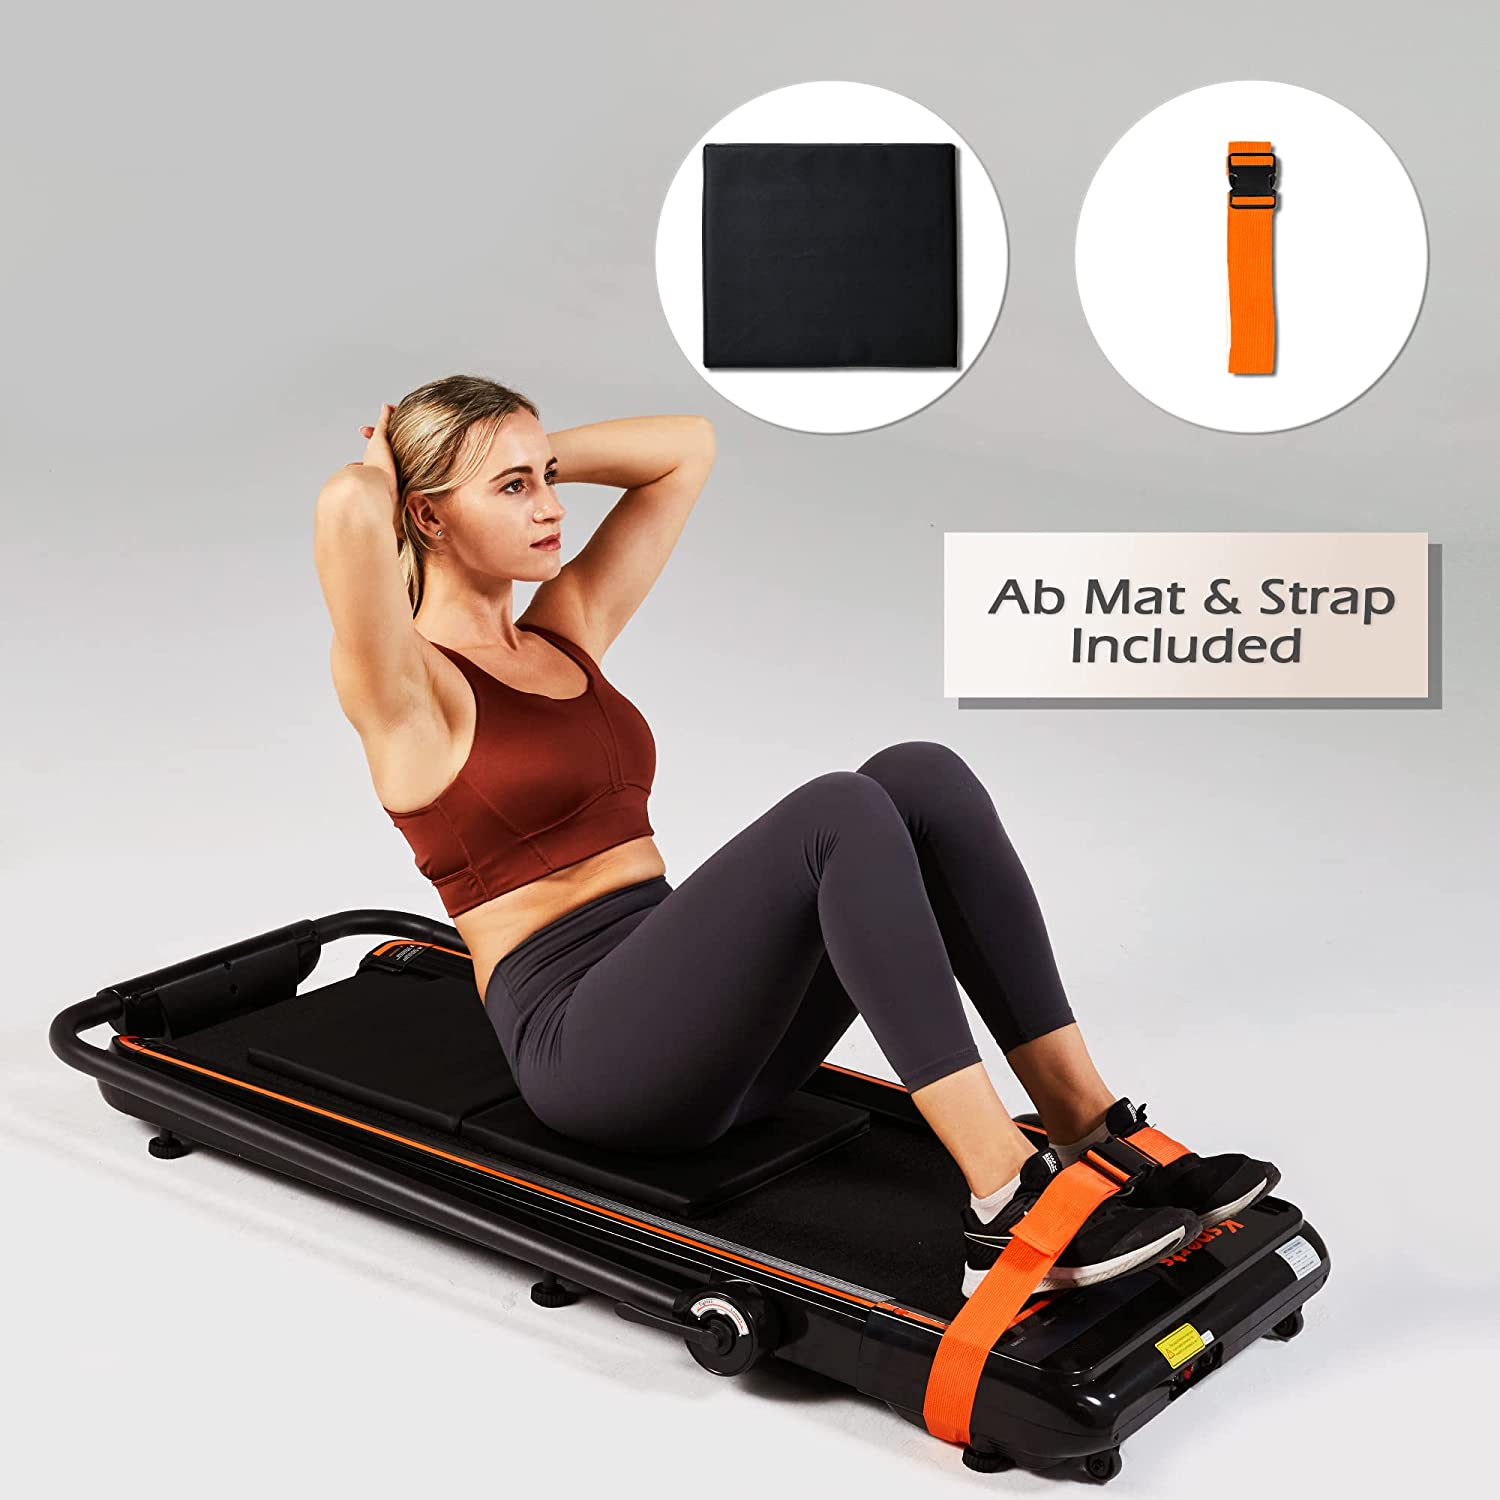 Ksports 3 in 1 Folding Treadmill Orange (2.25HP/Max: 265lbs) - Model KSU3001